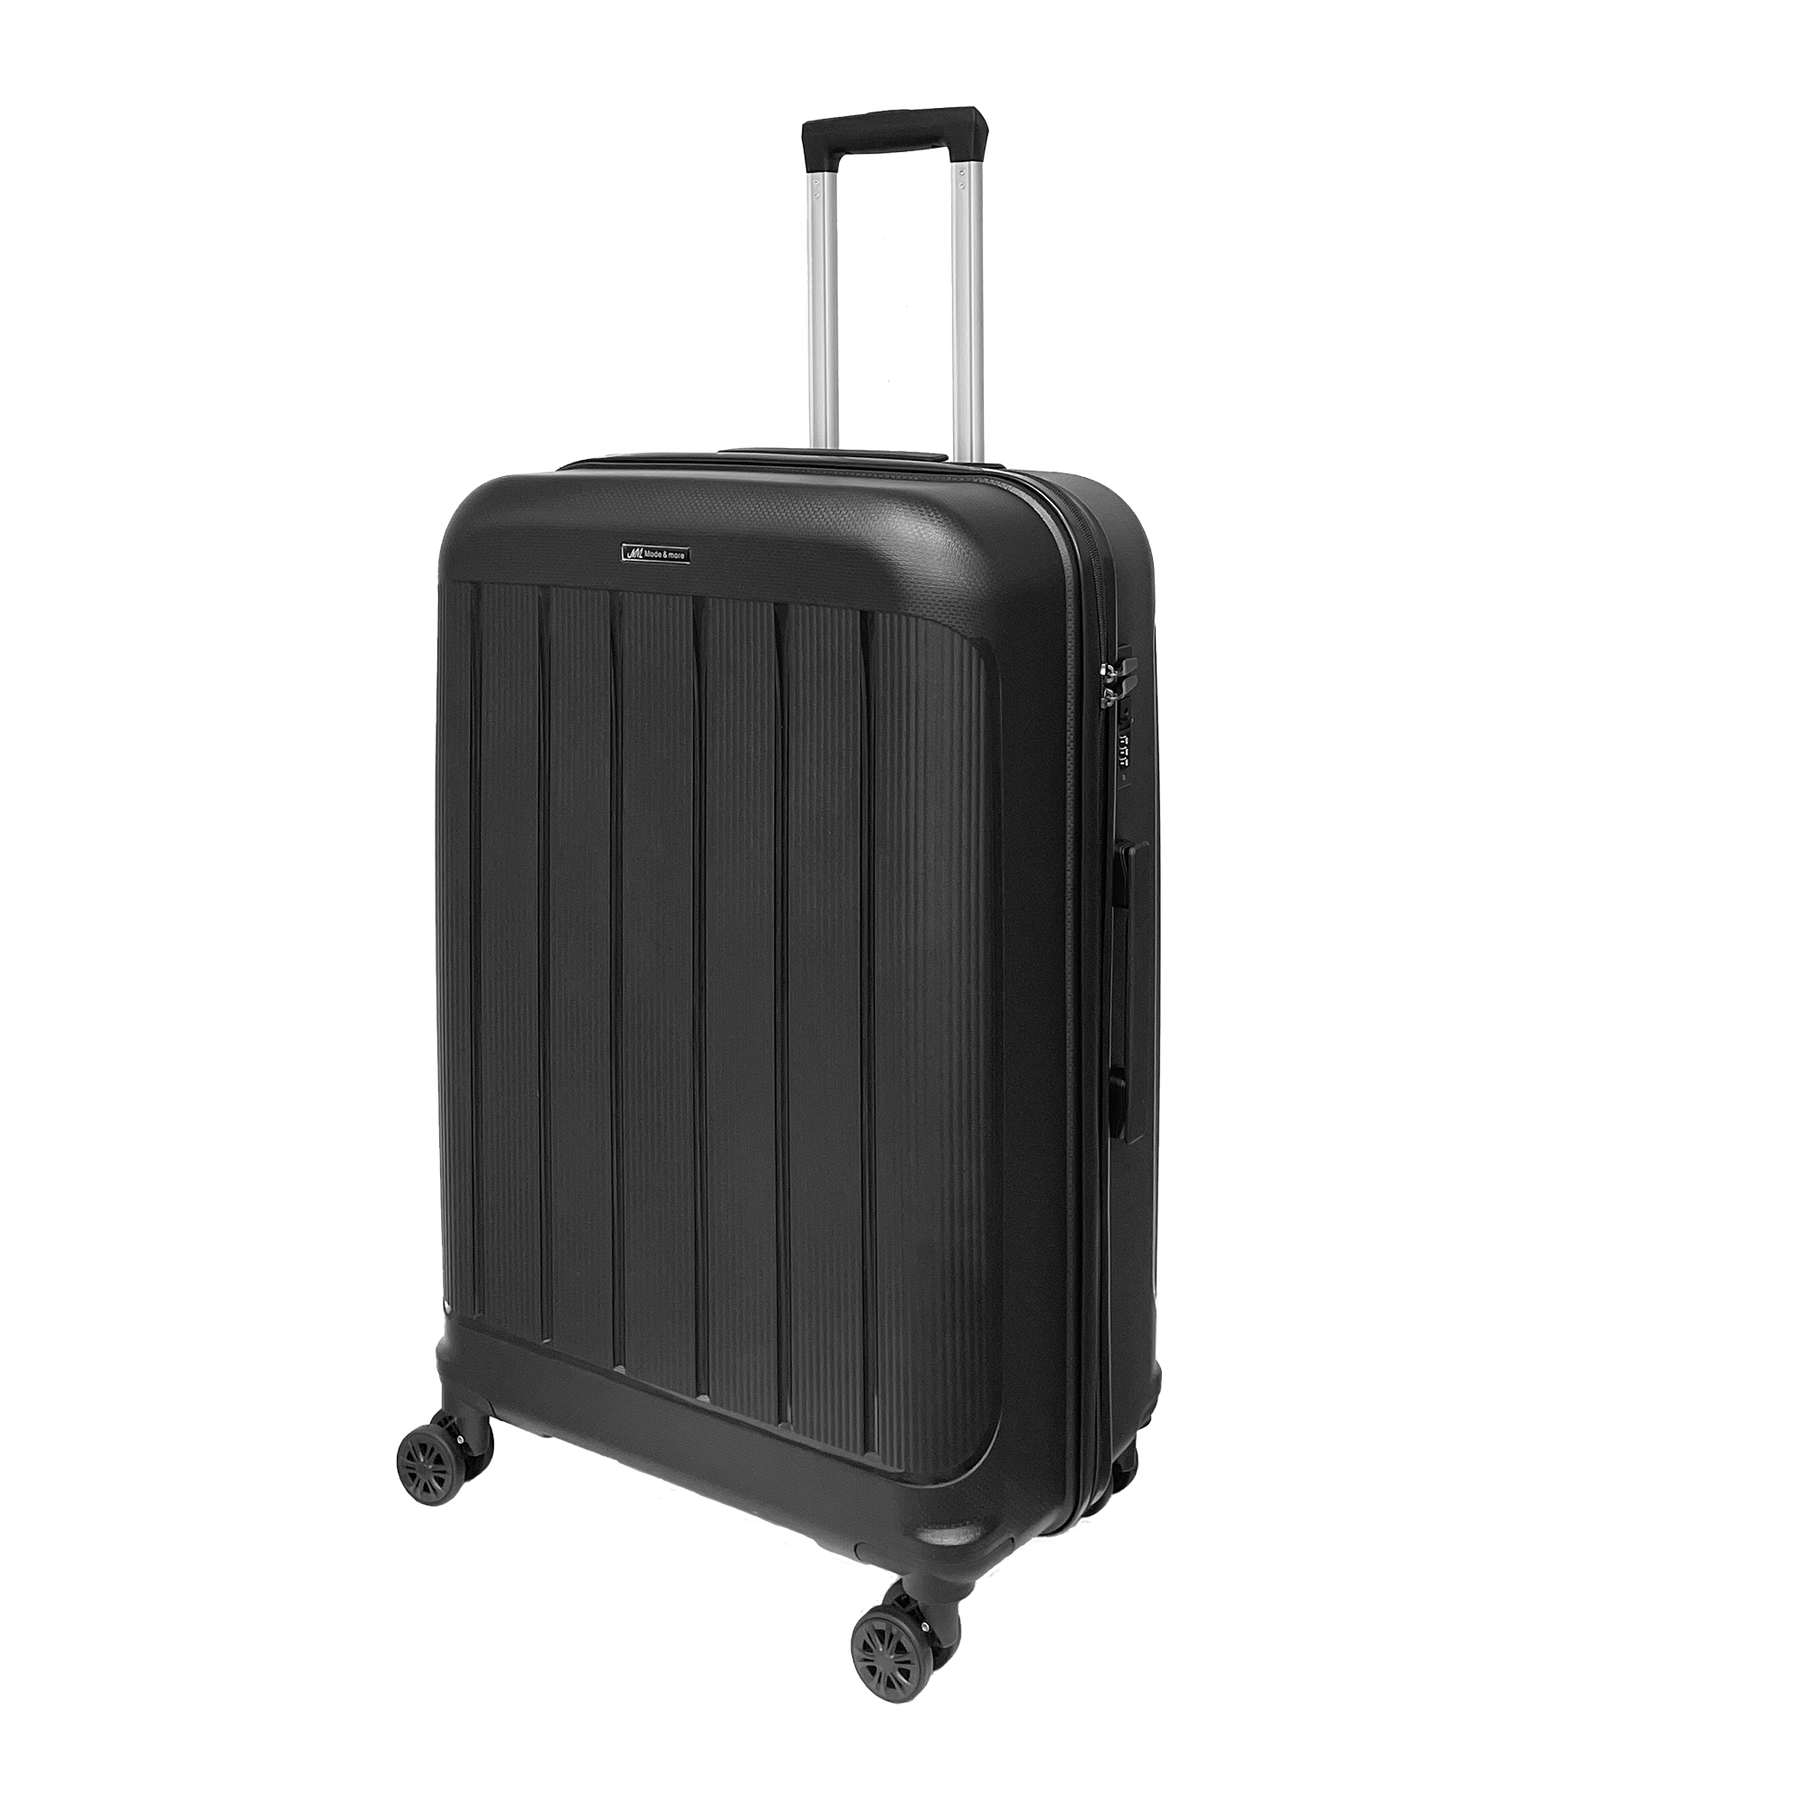 Velký měkký polypropylenový kufr Světlo 74x50x30cm s zámkem TSA